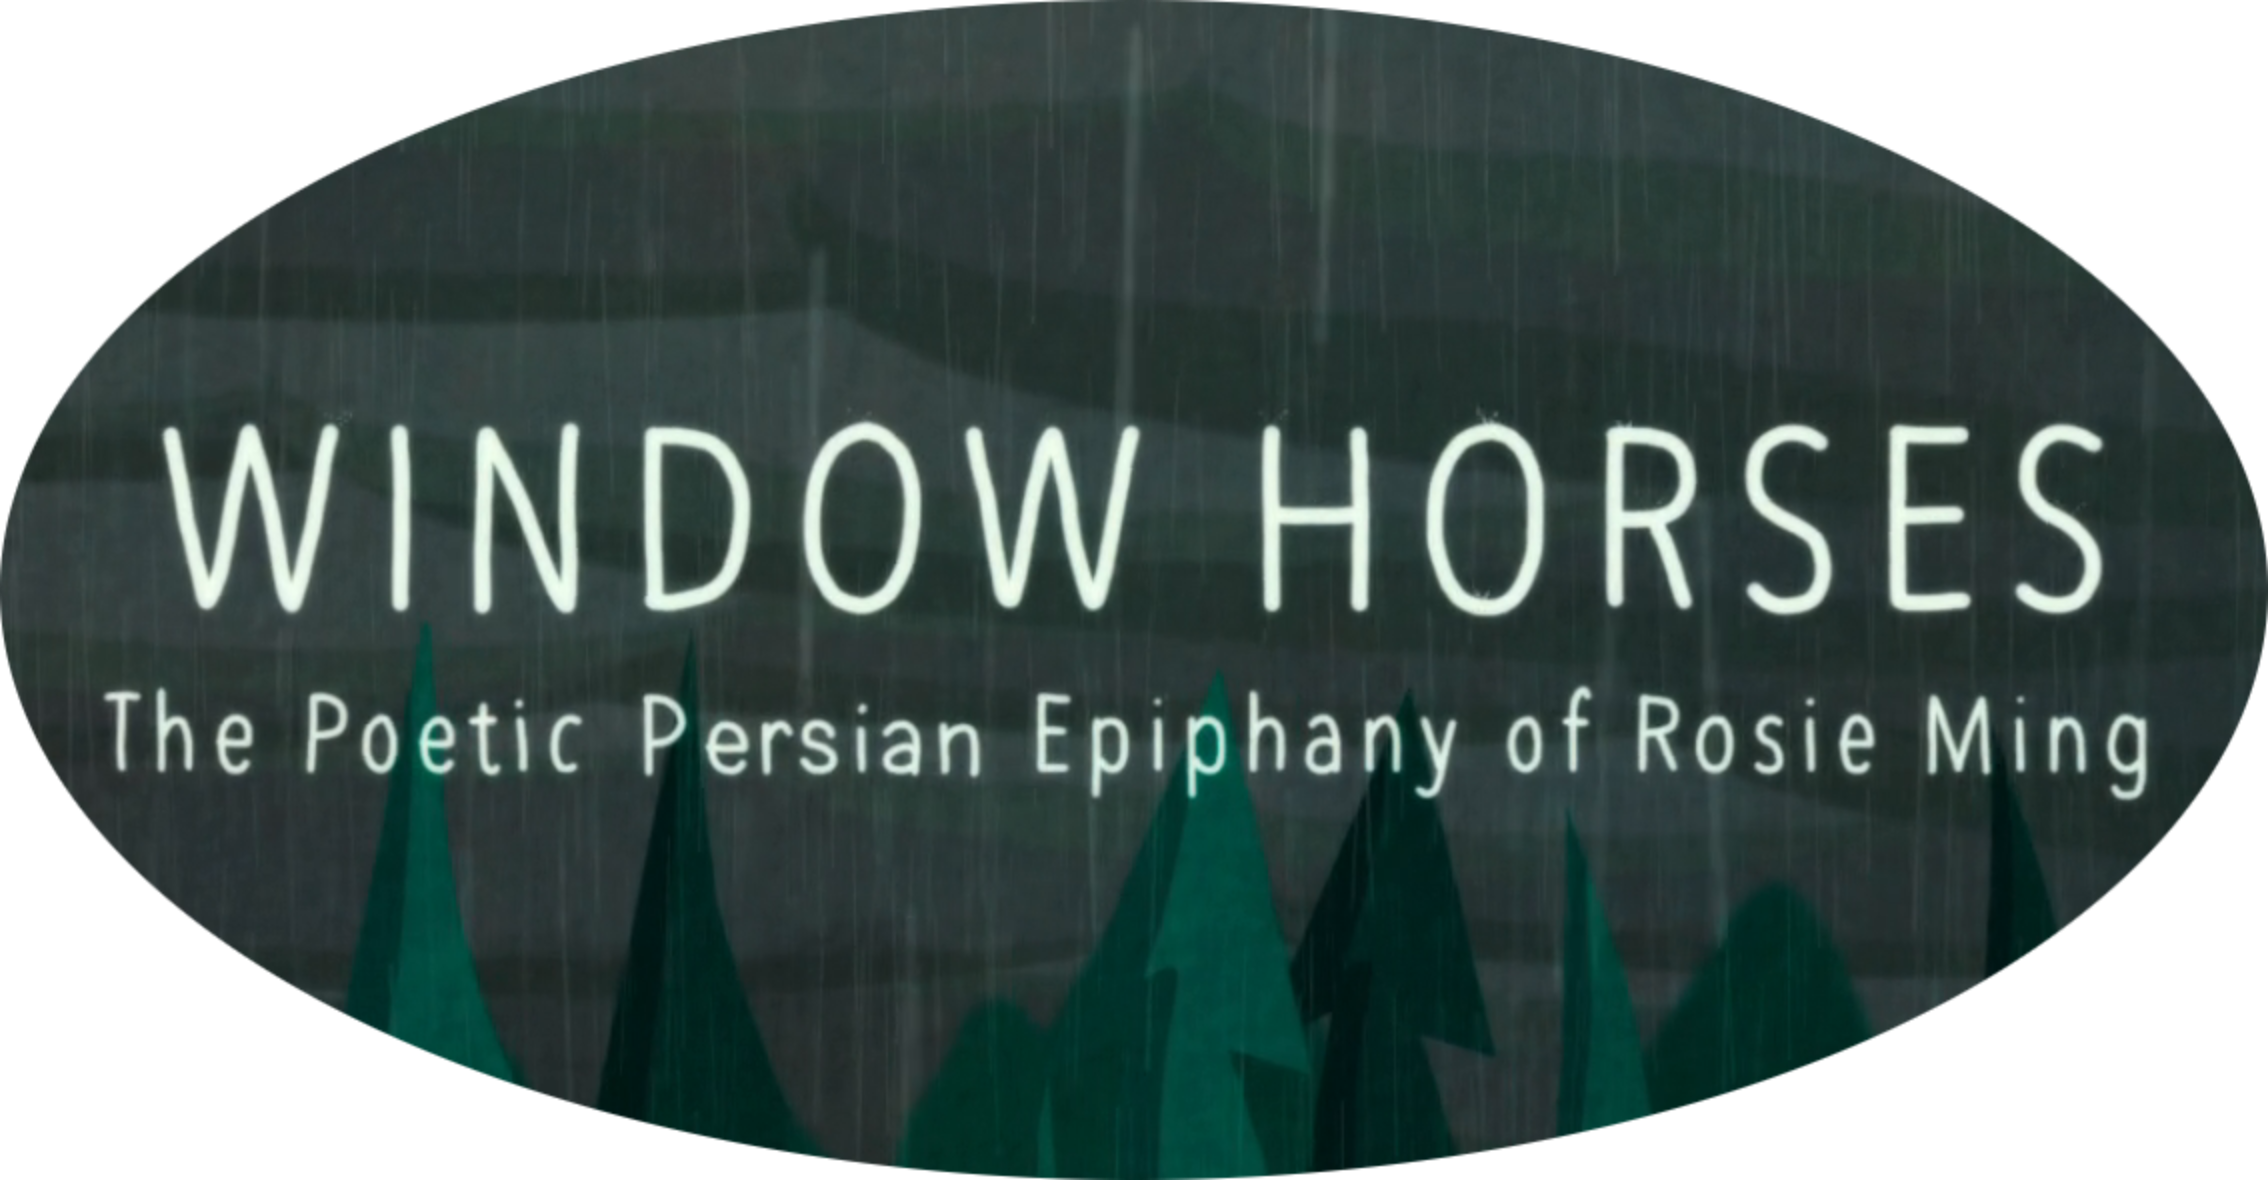 Window Horses 